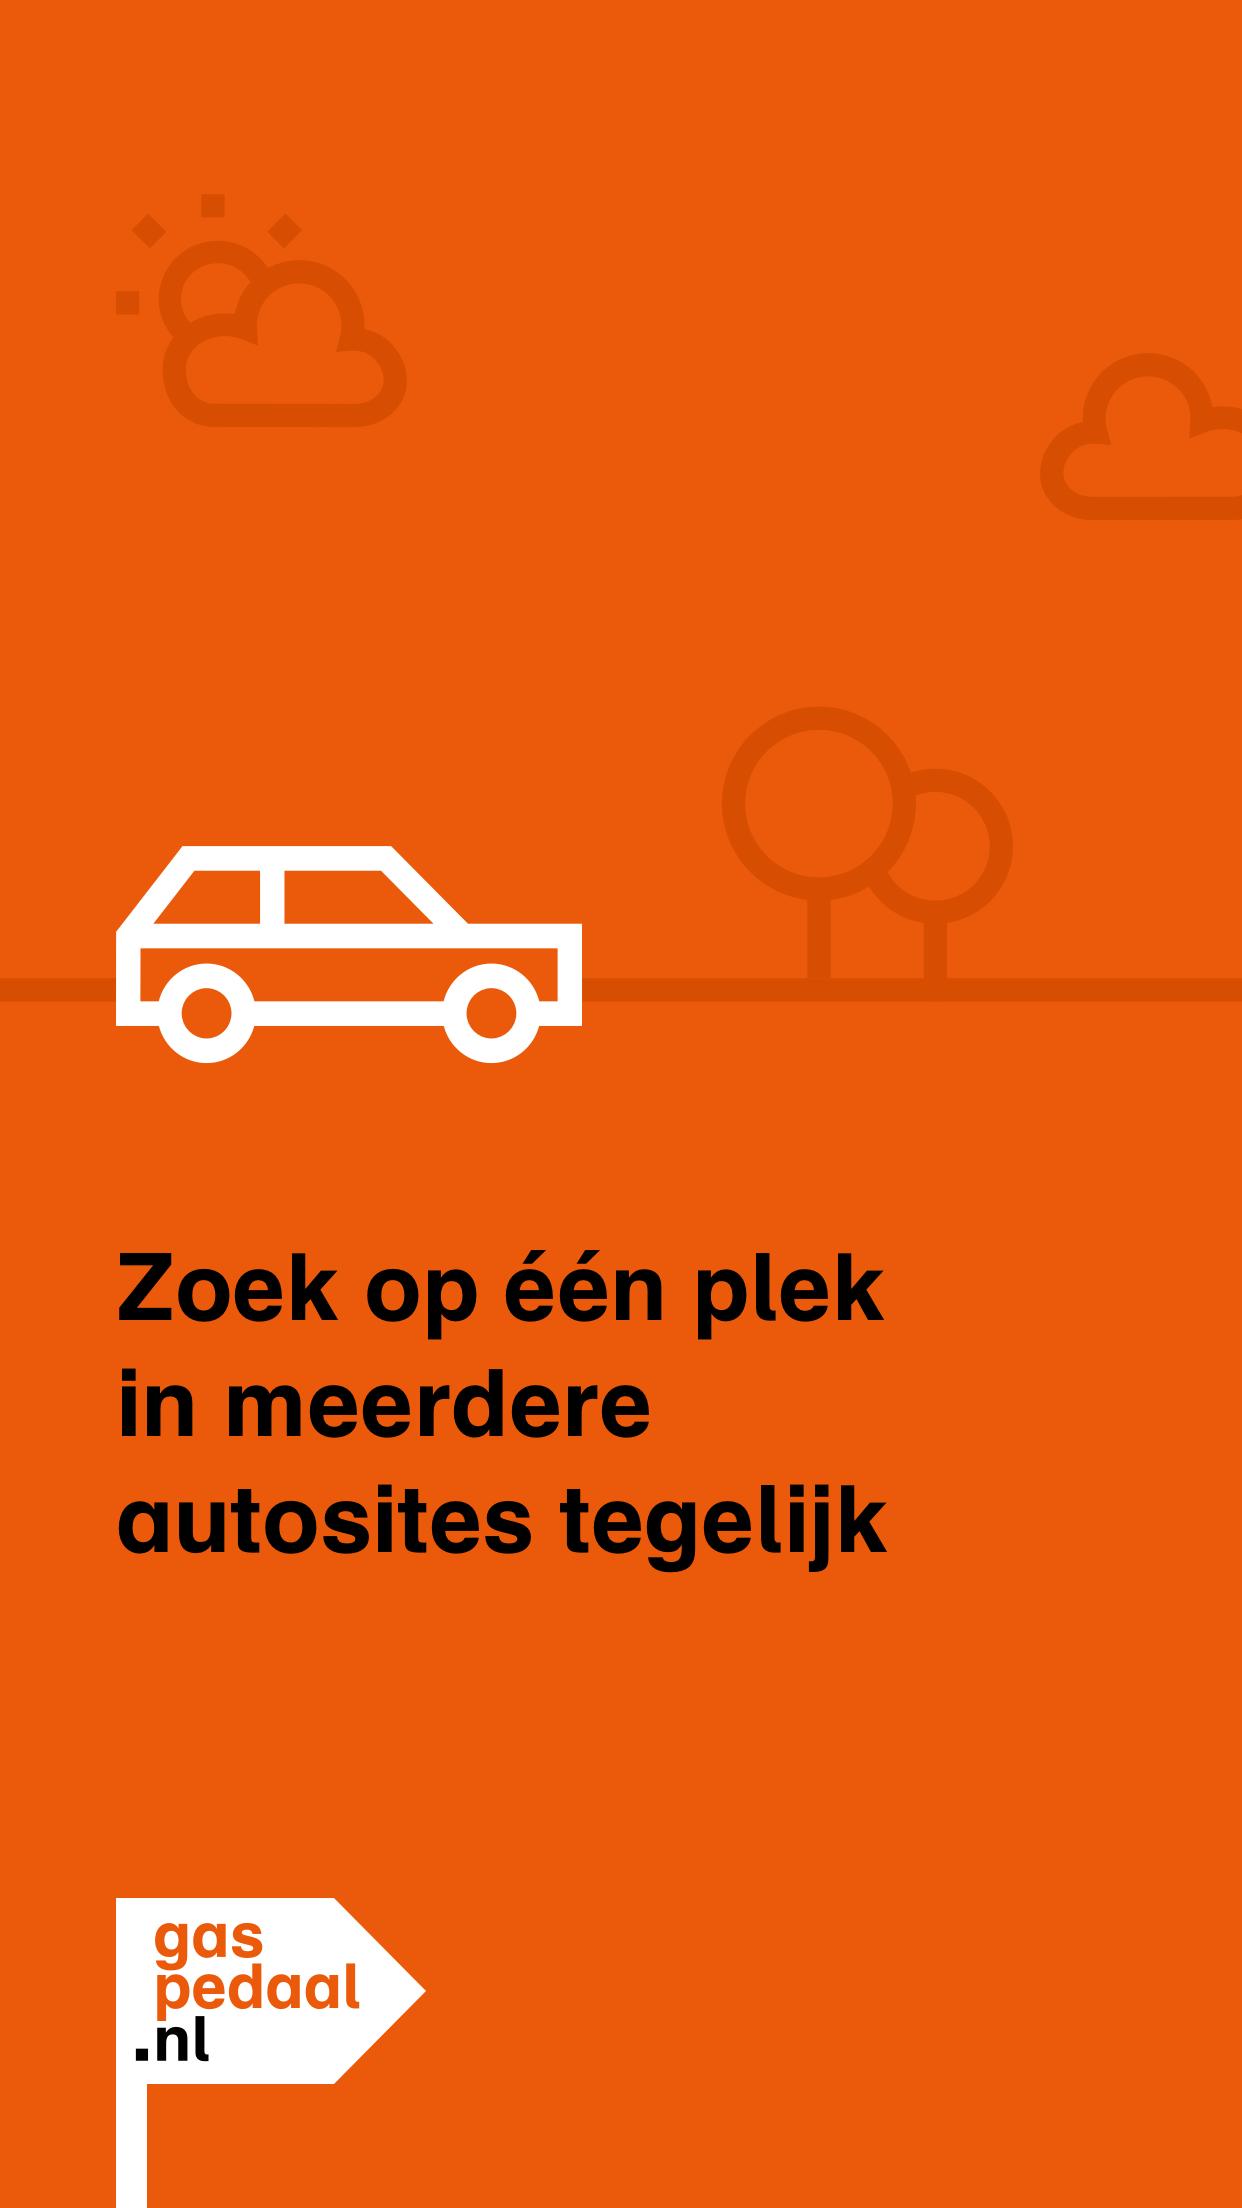 web Inzichtelijk Ja GasPedaal.nl - Tweedehands auto zoeken en kopen for Android - APK Download